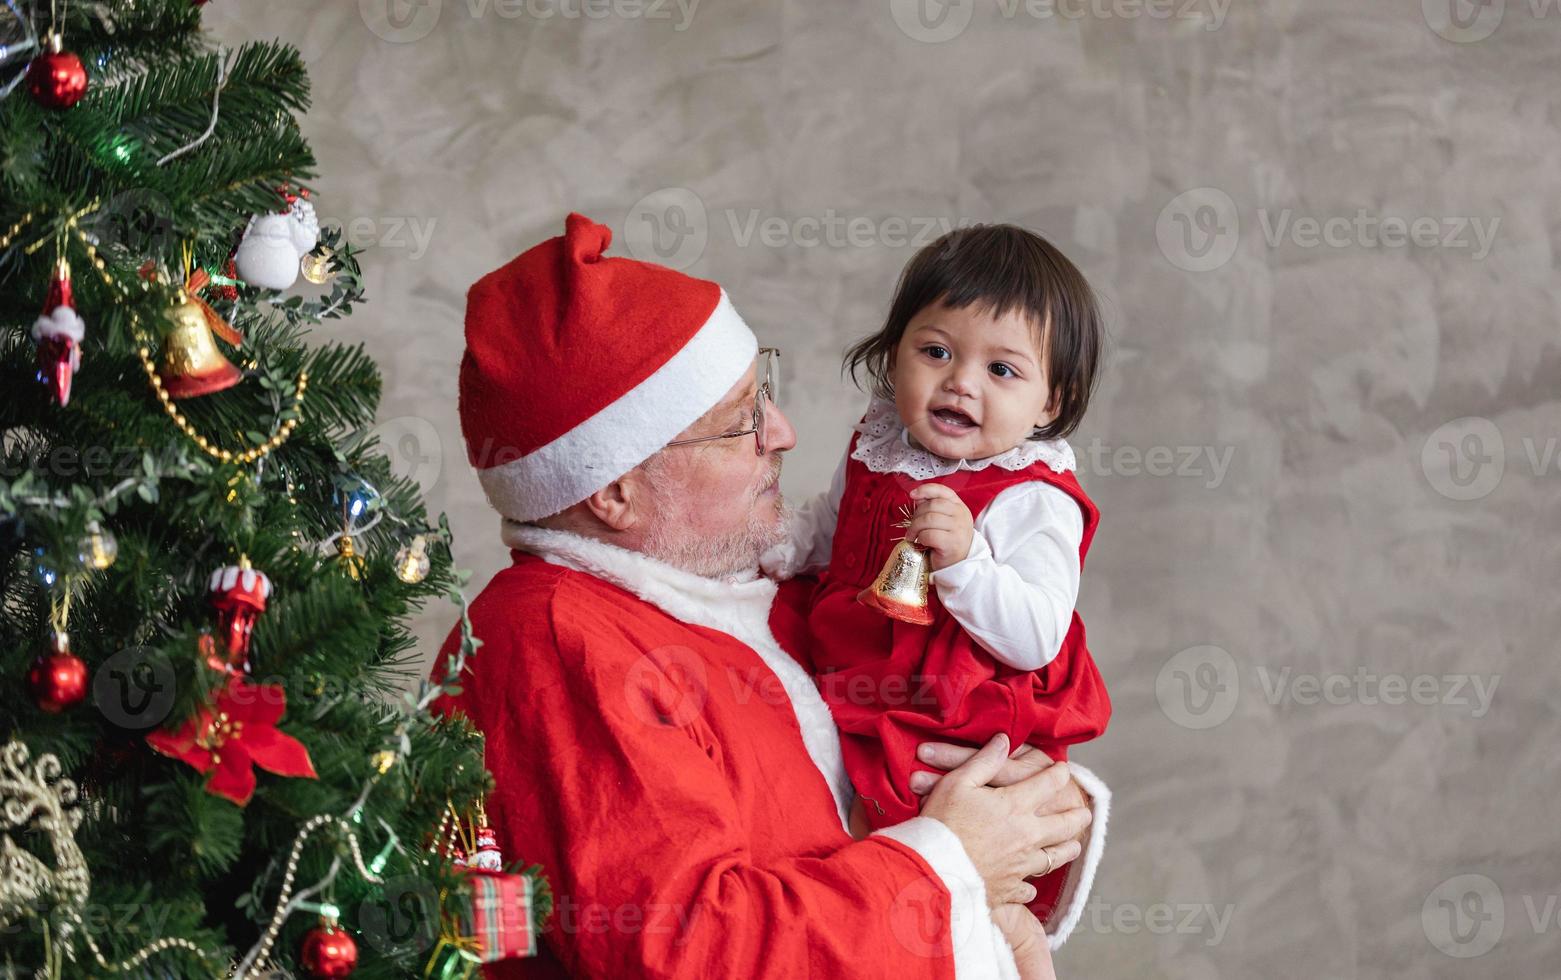 papai noel está levantando uma menina feliz e rindo alegremente enquanto ajuda a decorar a árvore de natal nas costas para o conceito de celebração da temporada foto